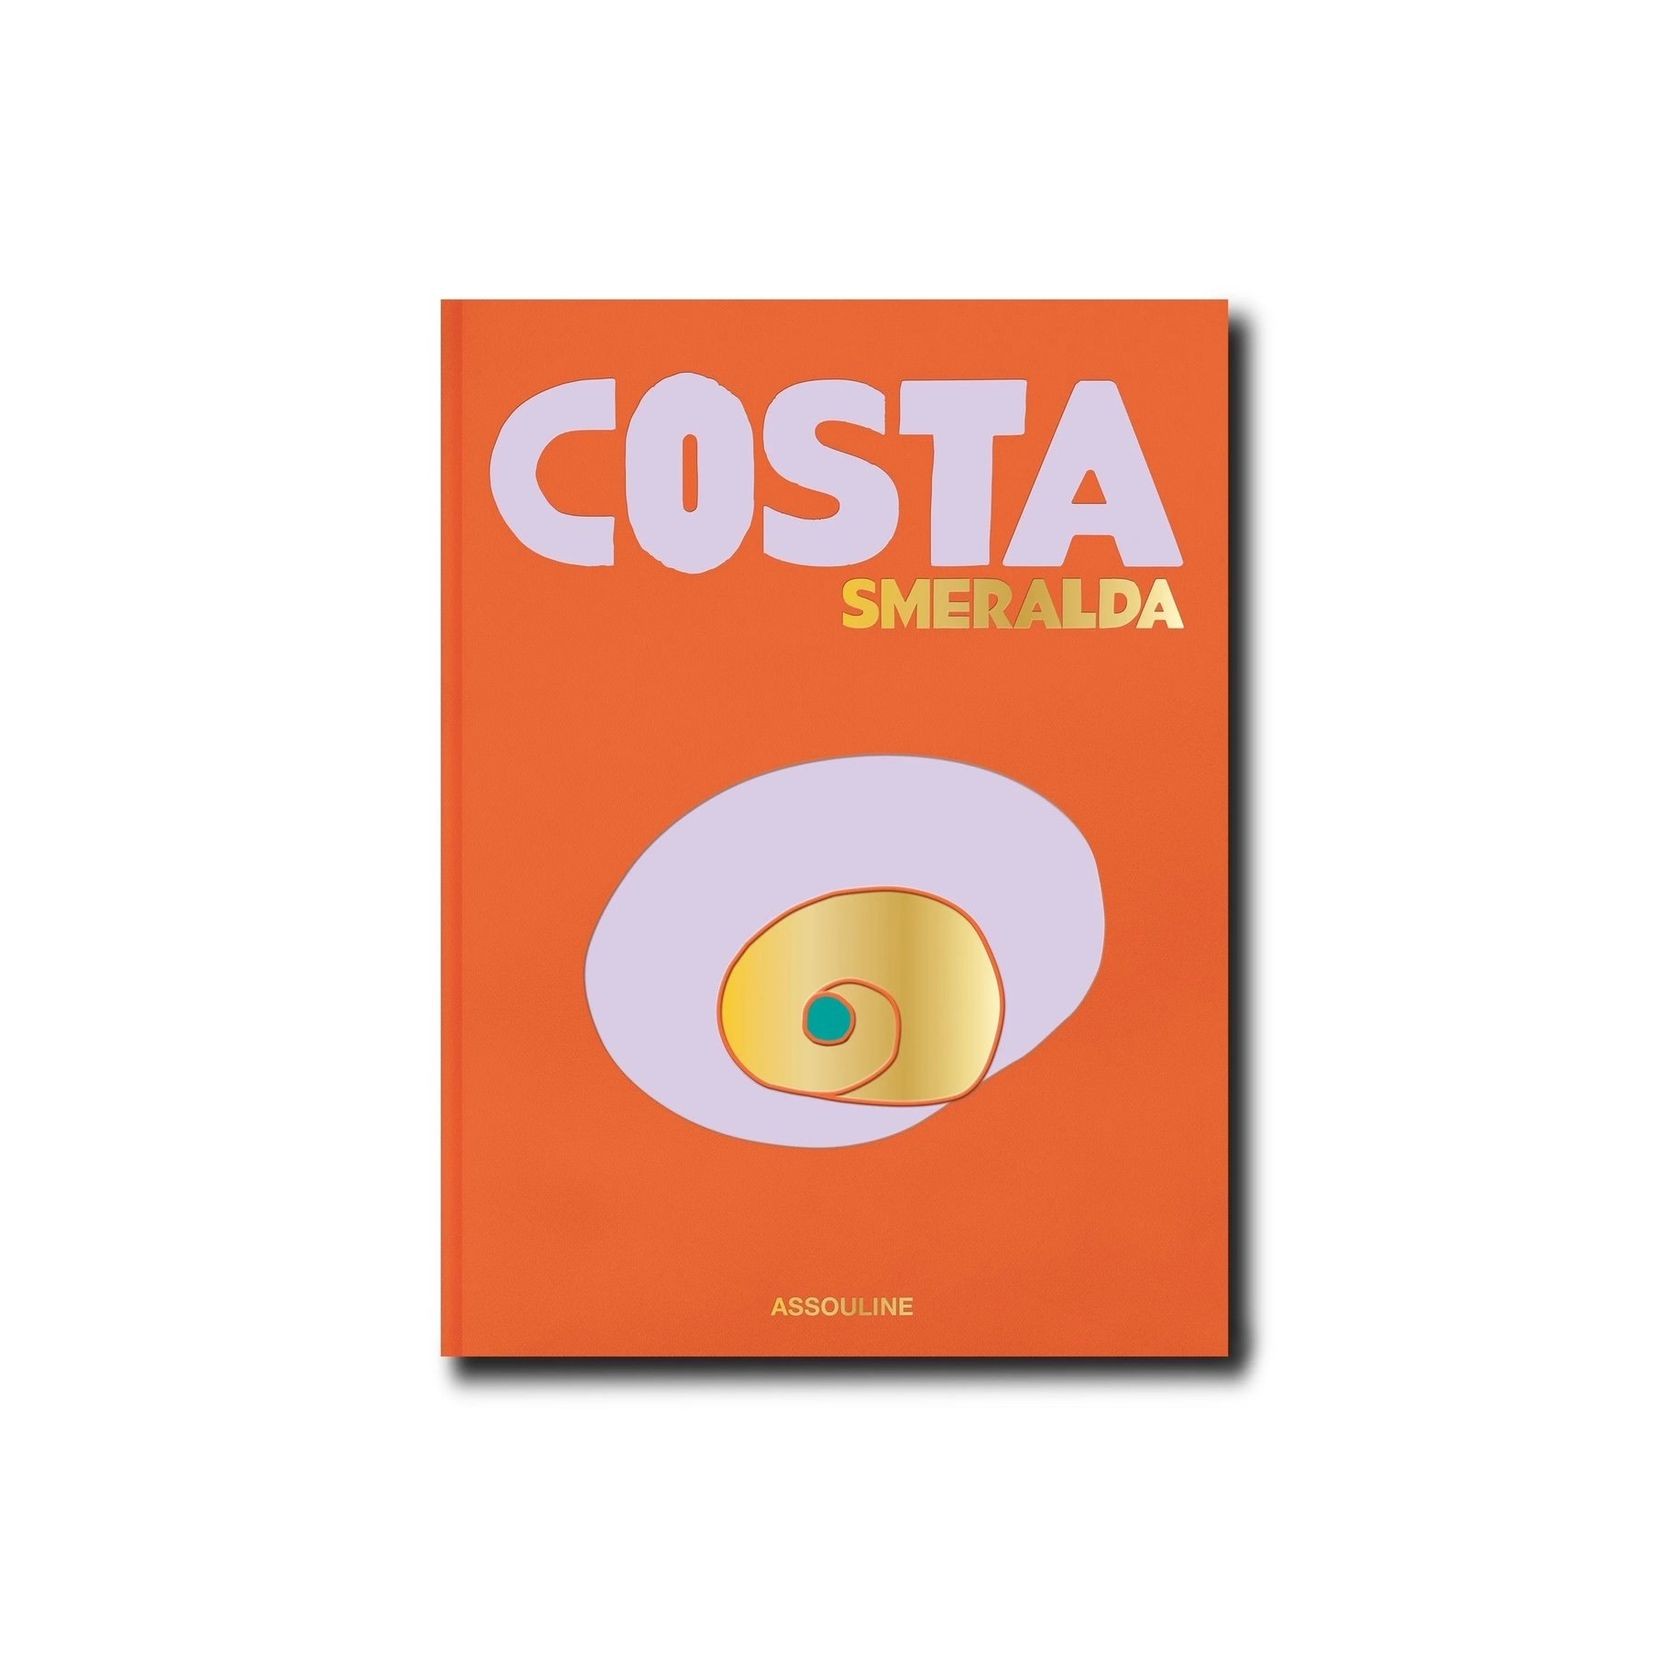 Costa Smeralda gallery detail image